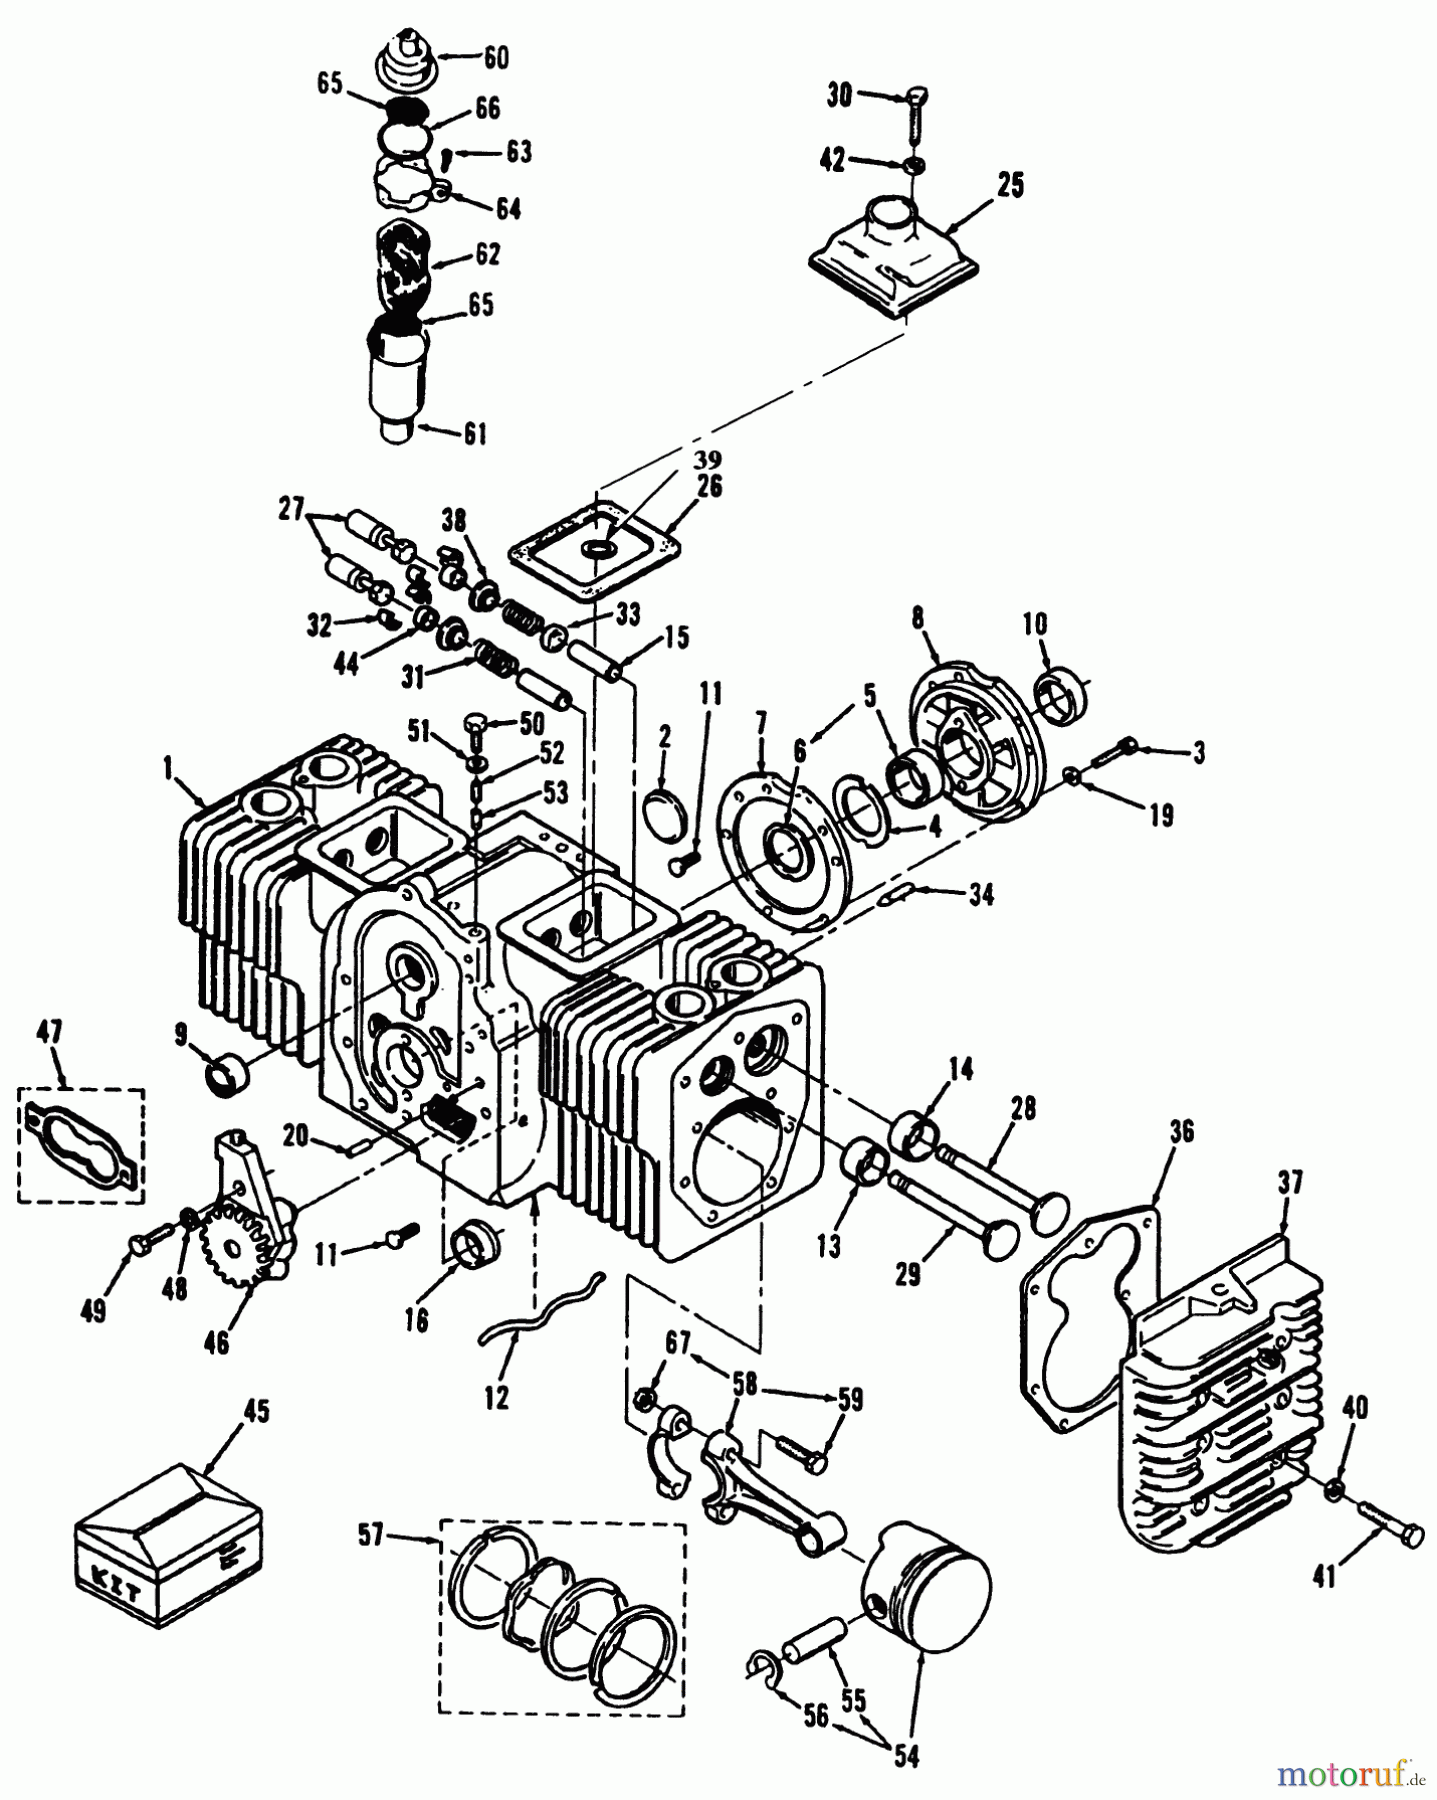  Toro Neu Mowers, Lawn & Garden Tractor Seite 1 41-20OE03 (520-H) - Toro 520-H Garden Tractor, 1992 (2000001-2999999) ENGINE CYLINDER BLOCK